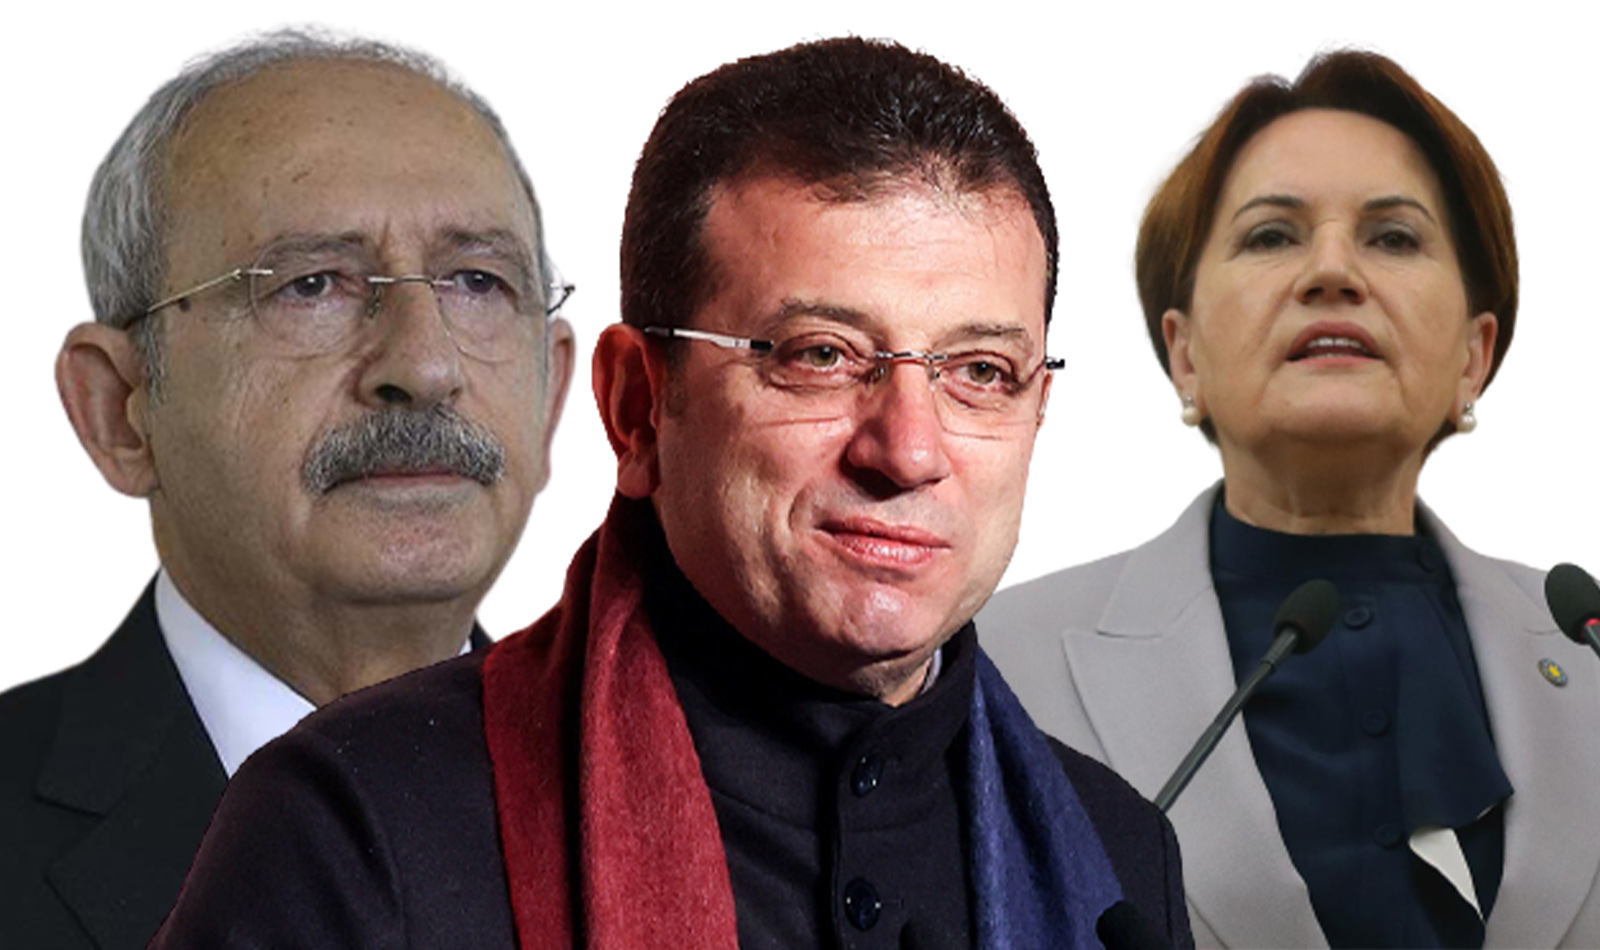 İYİ Parti'nin 80 milyon TL'lik faturasını ödeyen İmamoğlu, Kemal Kılıçdaroğlu'nu kızdırmış! 